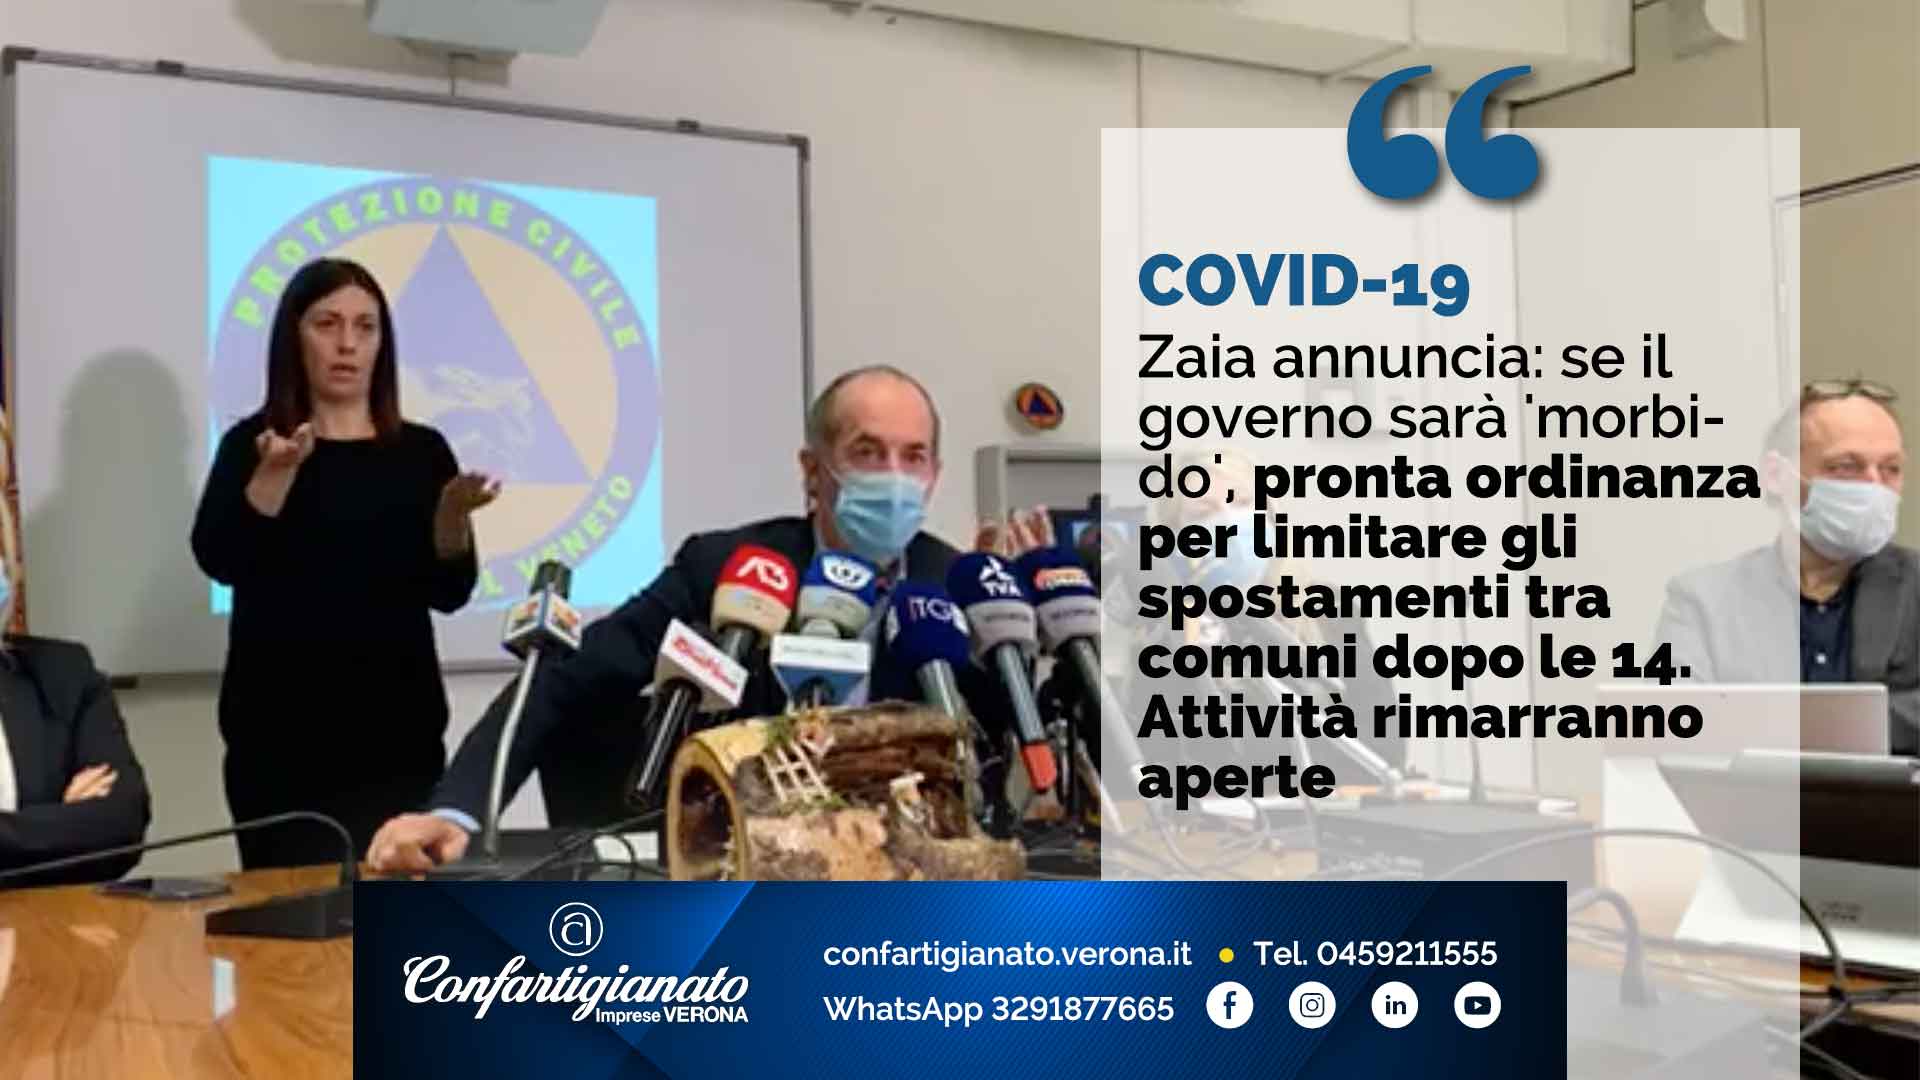 COVID-19 – Zaia annuncia: se il governo sarà 'morbido', pronta ordinanza per limitare spostamenti tra comuni dopo le 14. Attività rimarranno aperte